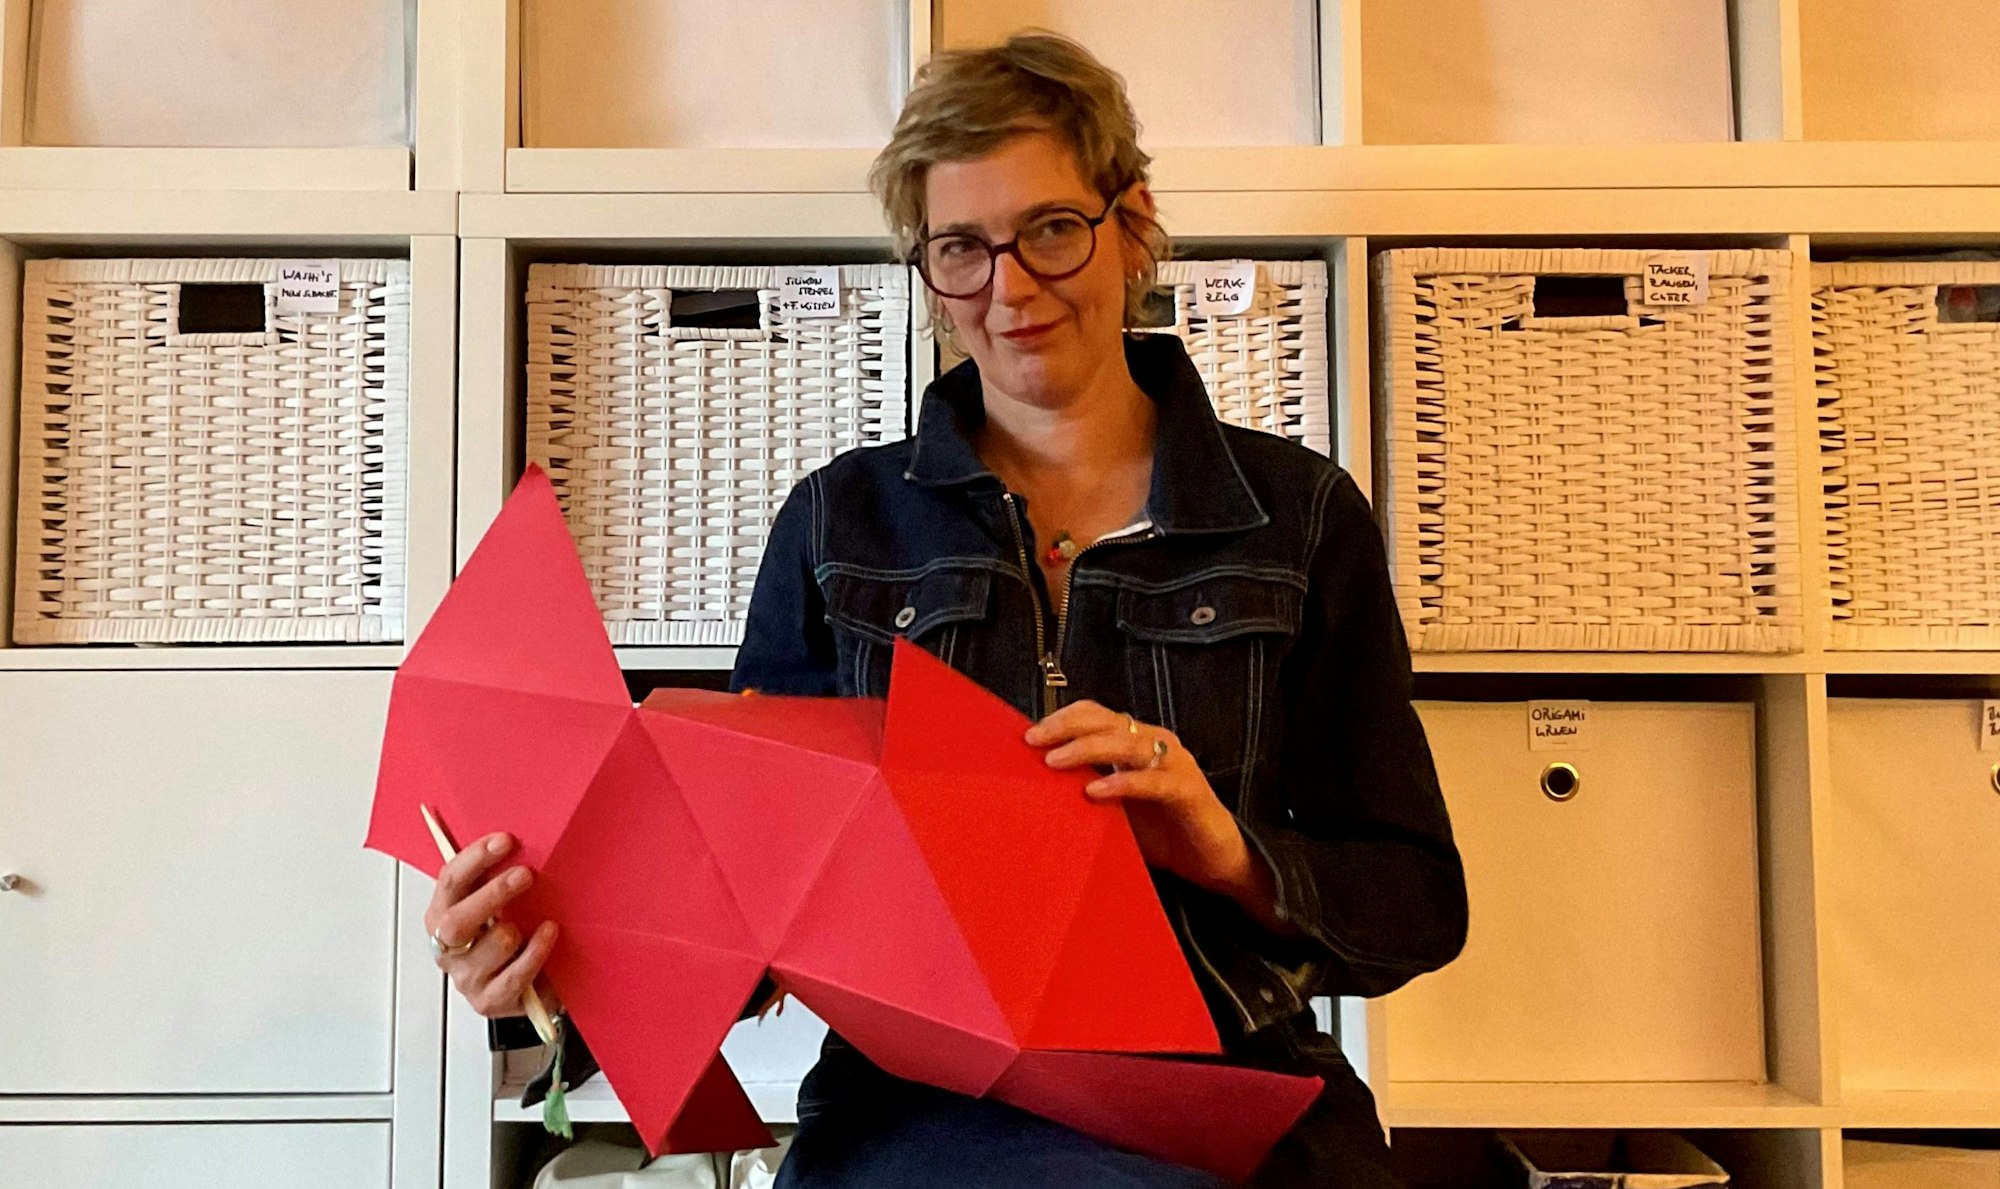 Eine Frau faltet einen großen roten Papierbogen auf Origami-Art